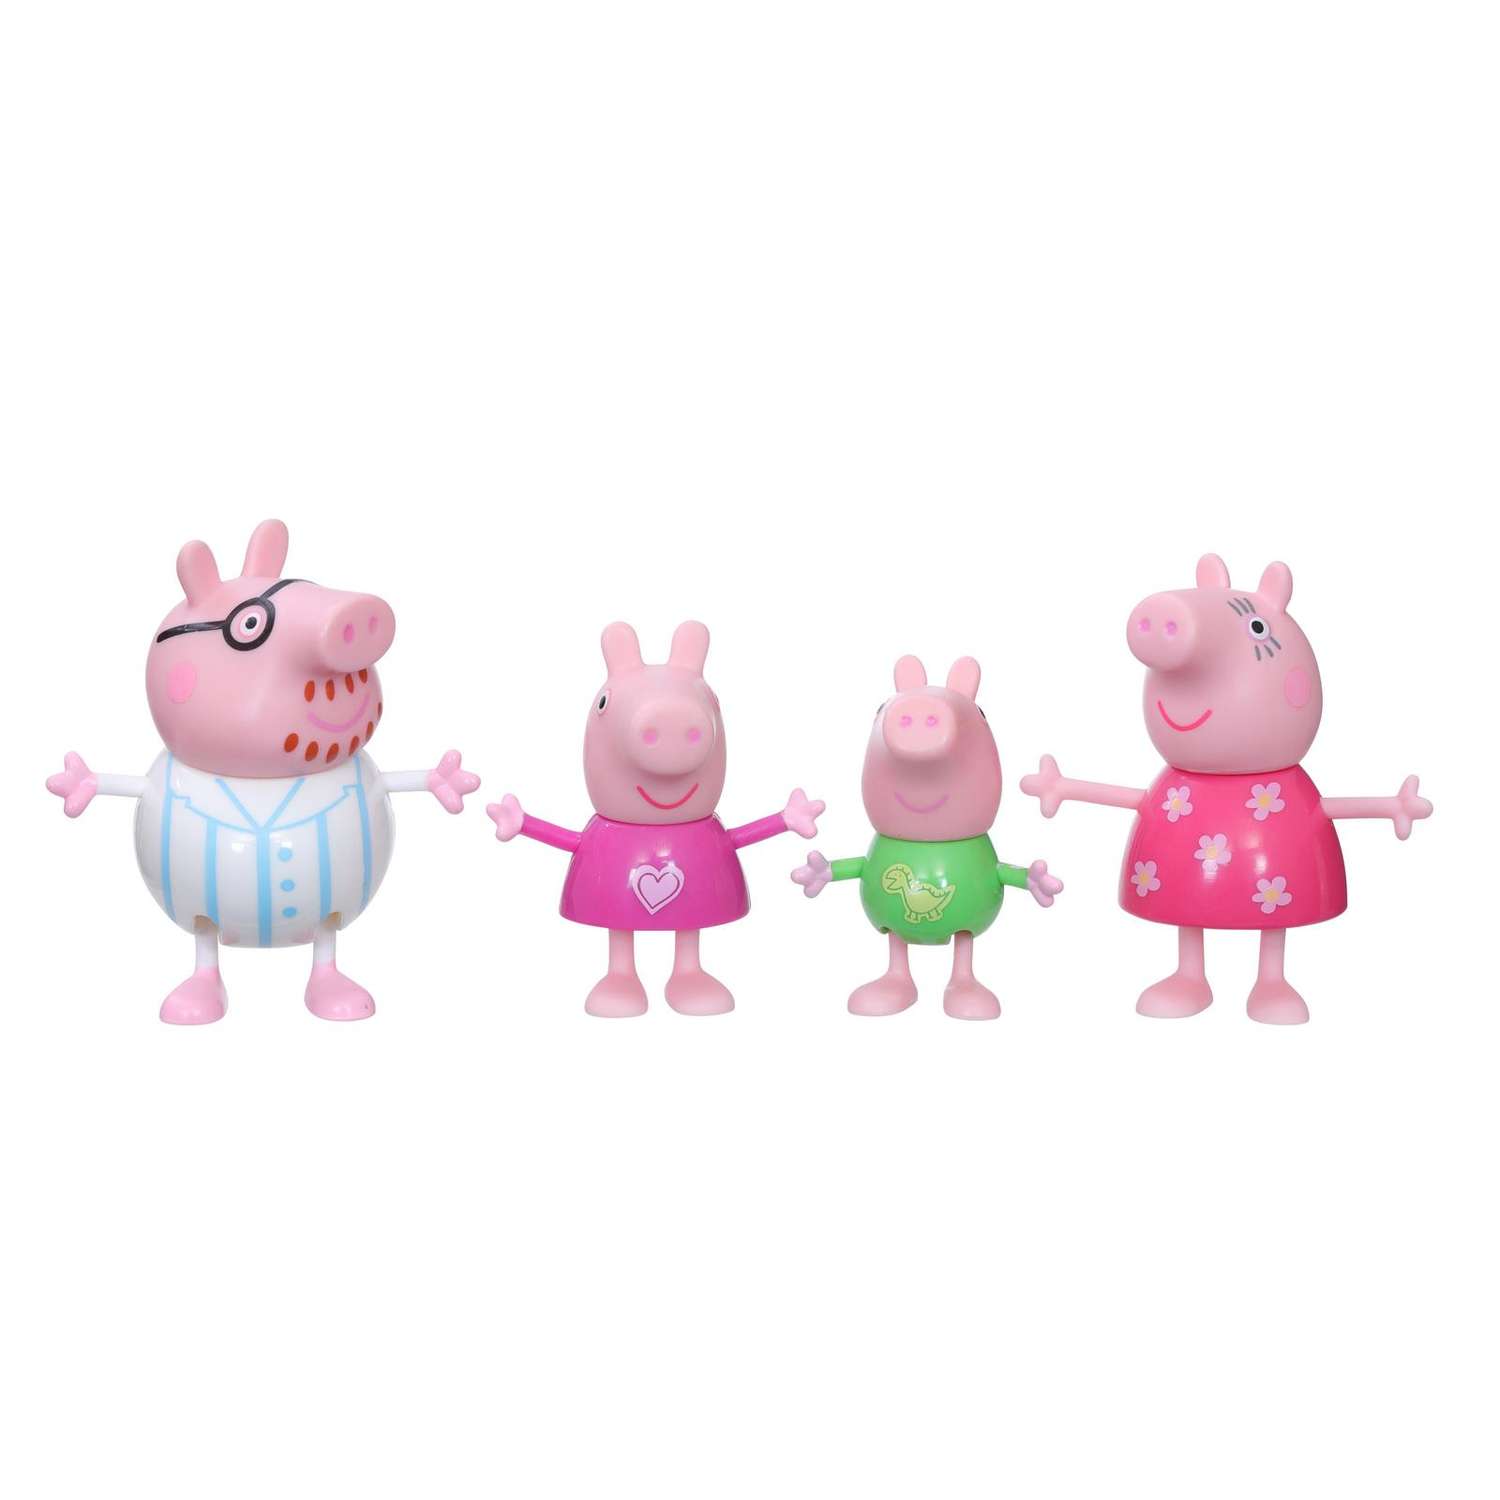 Набор игровой Peppa Pig Семья свинки Пеппы пижама F21925X0 - фото 1